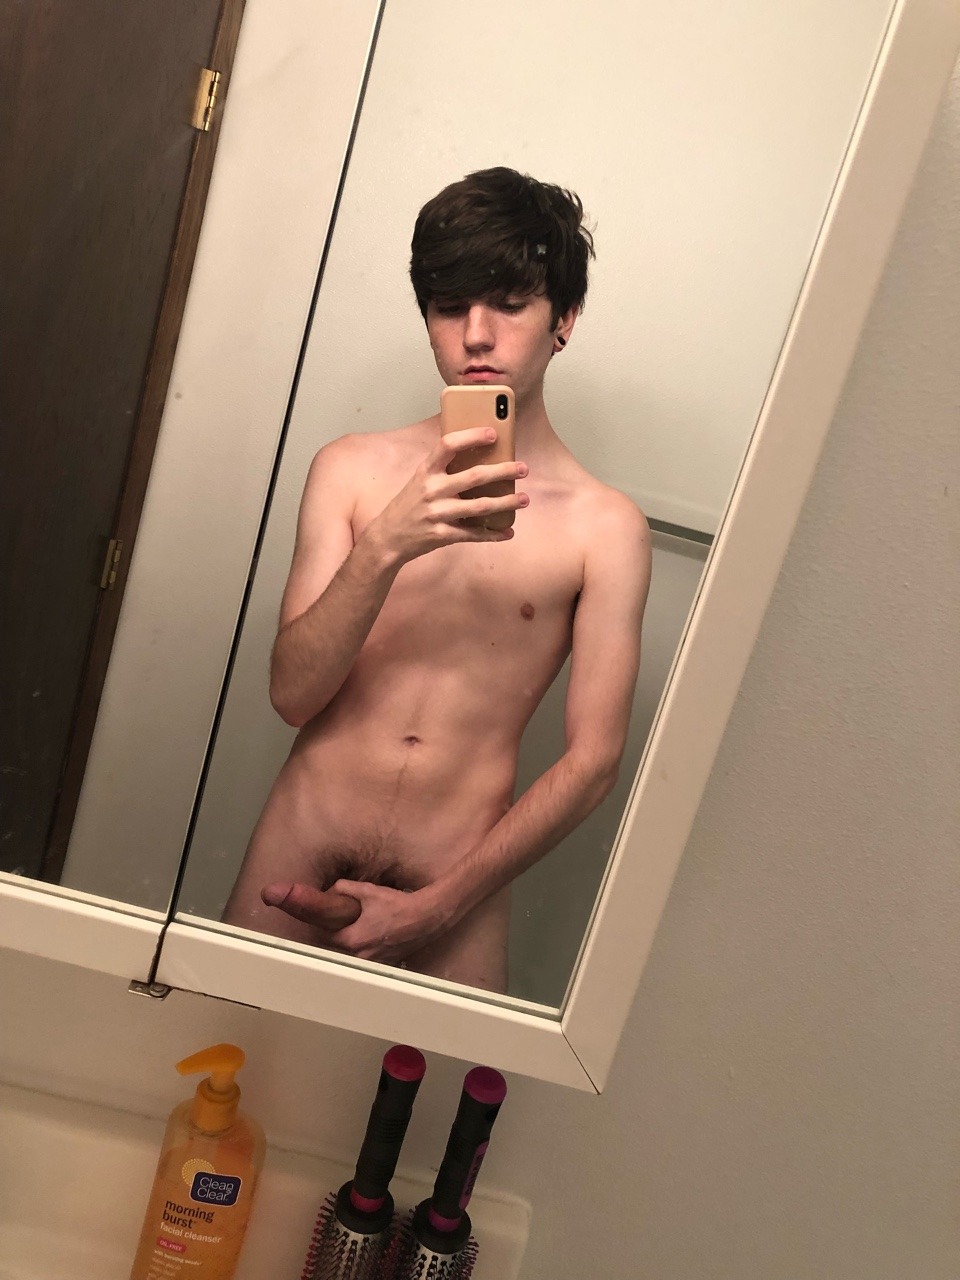 Nude selfie packages